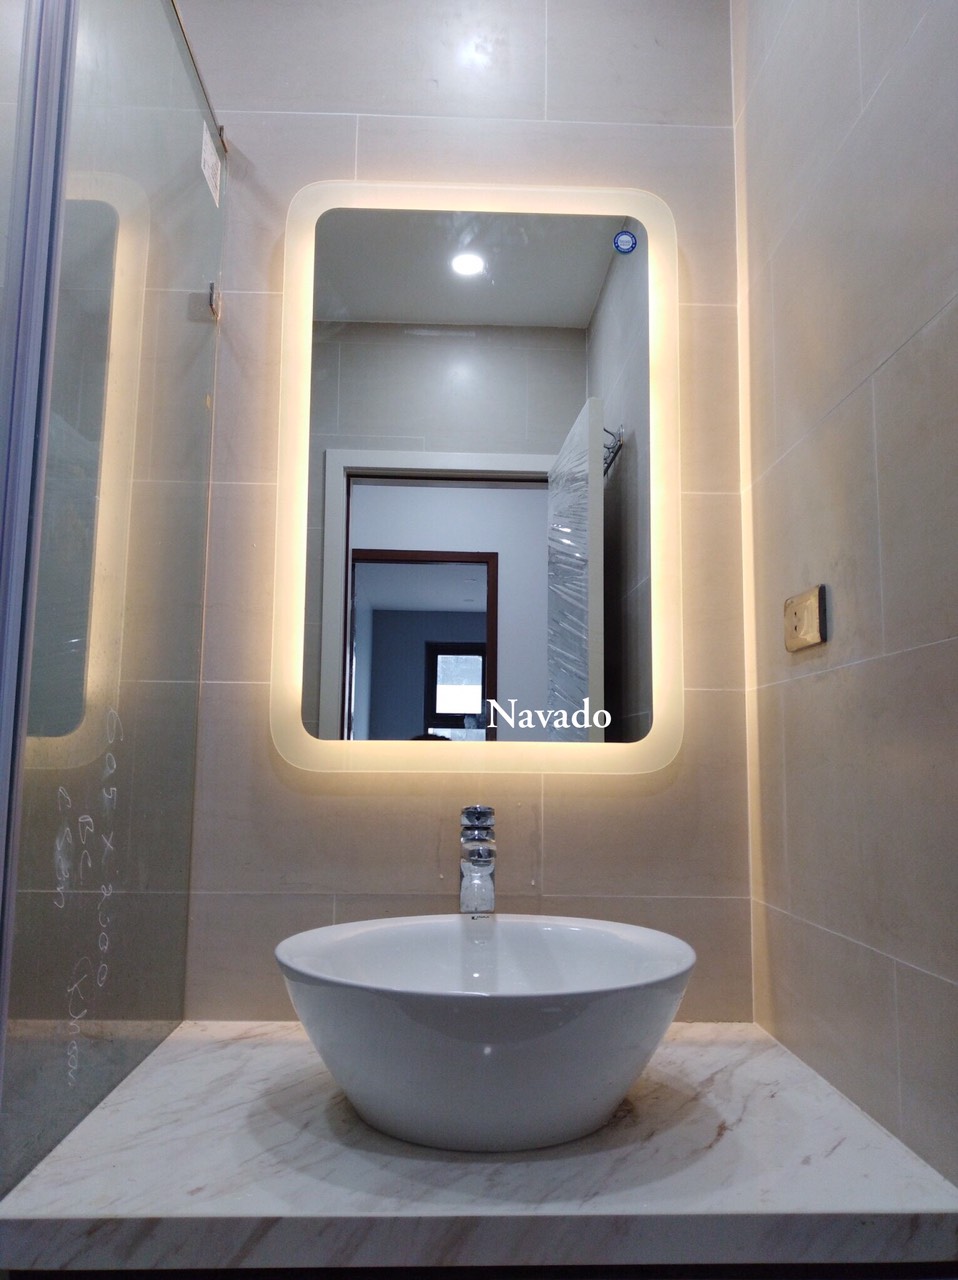 Bán Gương phòng tắm led hắt vàng 70 x 90cm - Thời gian đã đến để nâng cấp không gian phòng tắm của bạn với chiếc gương phòng tắm led hắt vàng 70 x 90cm đầy ấn tượng này. Với thiết kế độc đáo và chất liệu gương cao cấp, chiếc gương này là lựa chọn lý tưởng để tôn lên vẻ đẹp của phòng tắm của bạn. Với ánh sáng led hắt vàng ấm áp, chiếc gương sẽ giúp bạn tạo ra không gian thư giãn và ấm cúng cho chính mình. Đặt hàng ngay hôm nay để trang trí phòng tắm của bạn thật ấn tượng nhé!